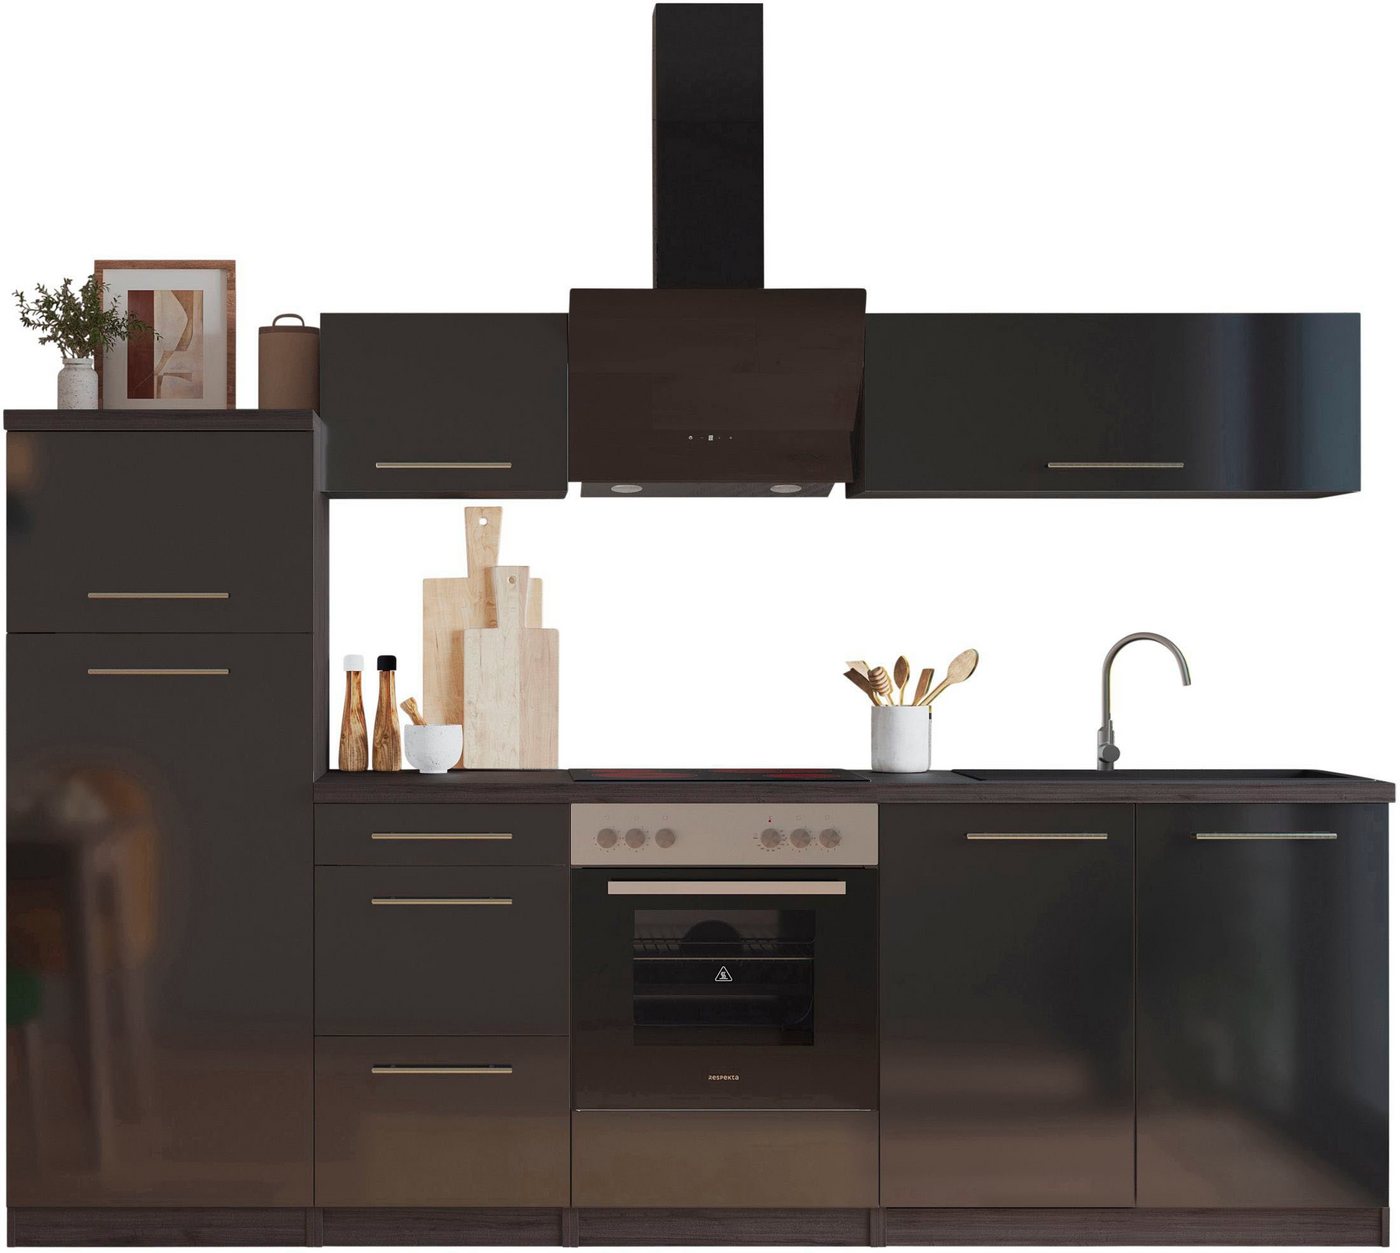 RESPEKTA Küche Amanda, Breite 270 cm, mit Soft-Close, exklusiver Konfiguration für OTTO von RESPEKTA